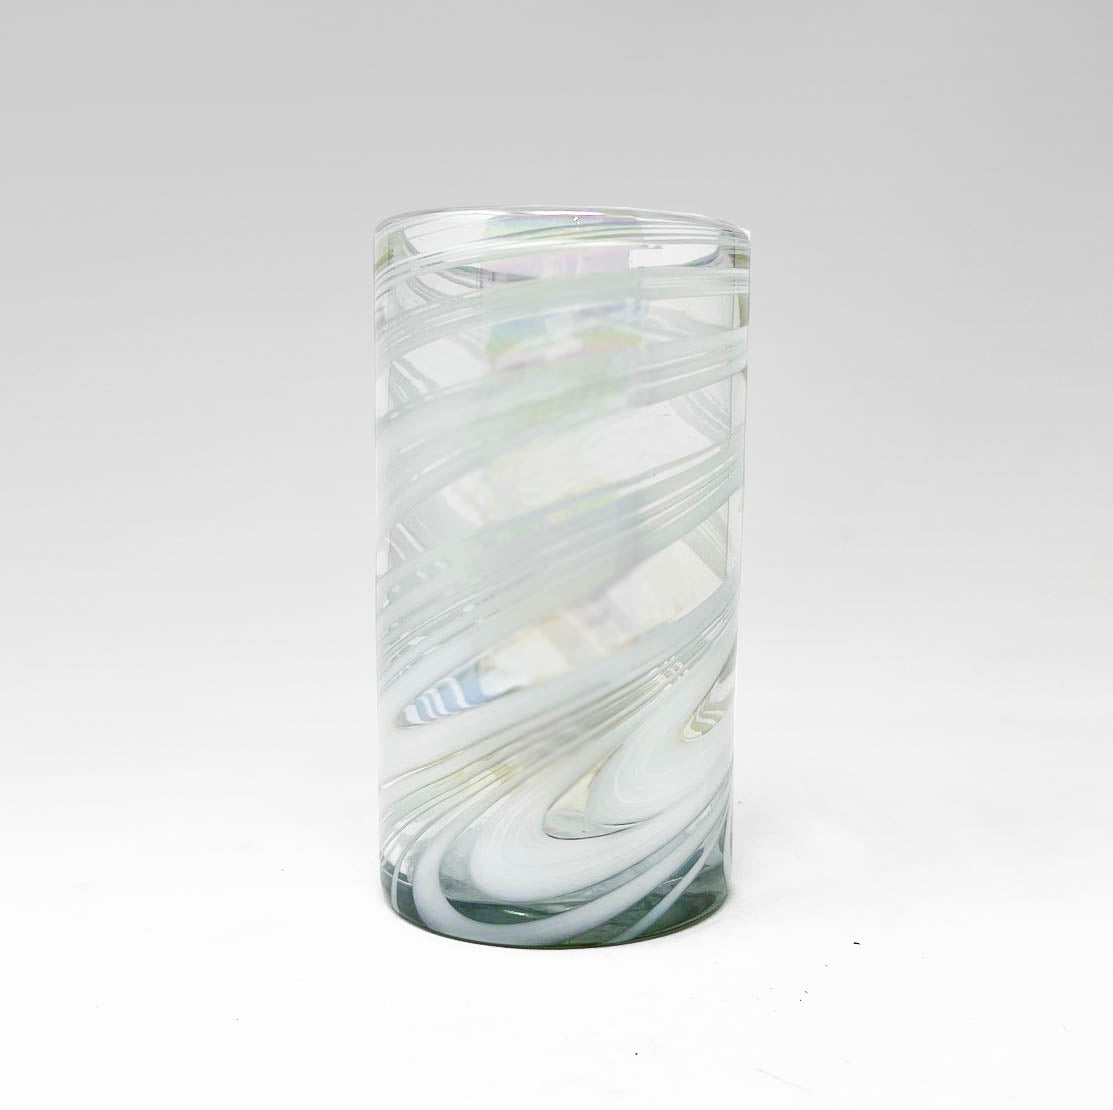 Hand Blown Water Glass - White Iridescent Swirl